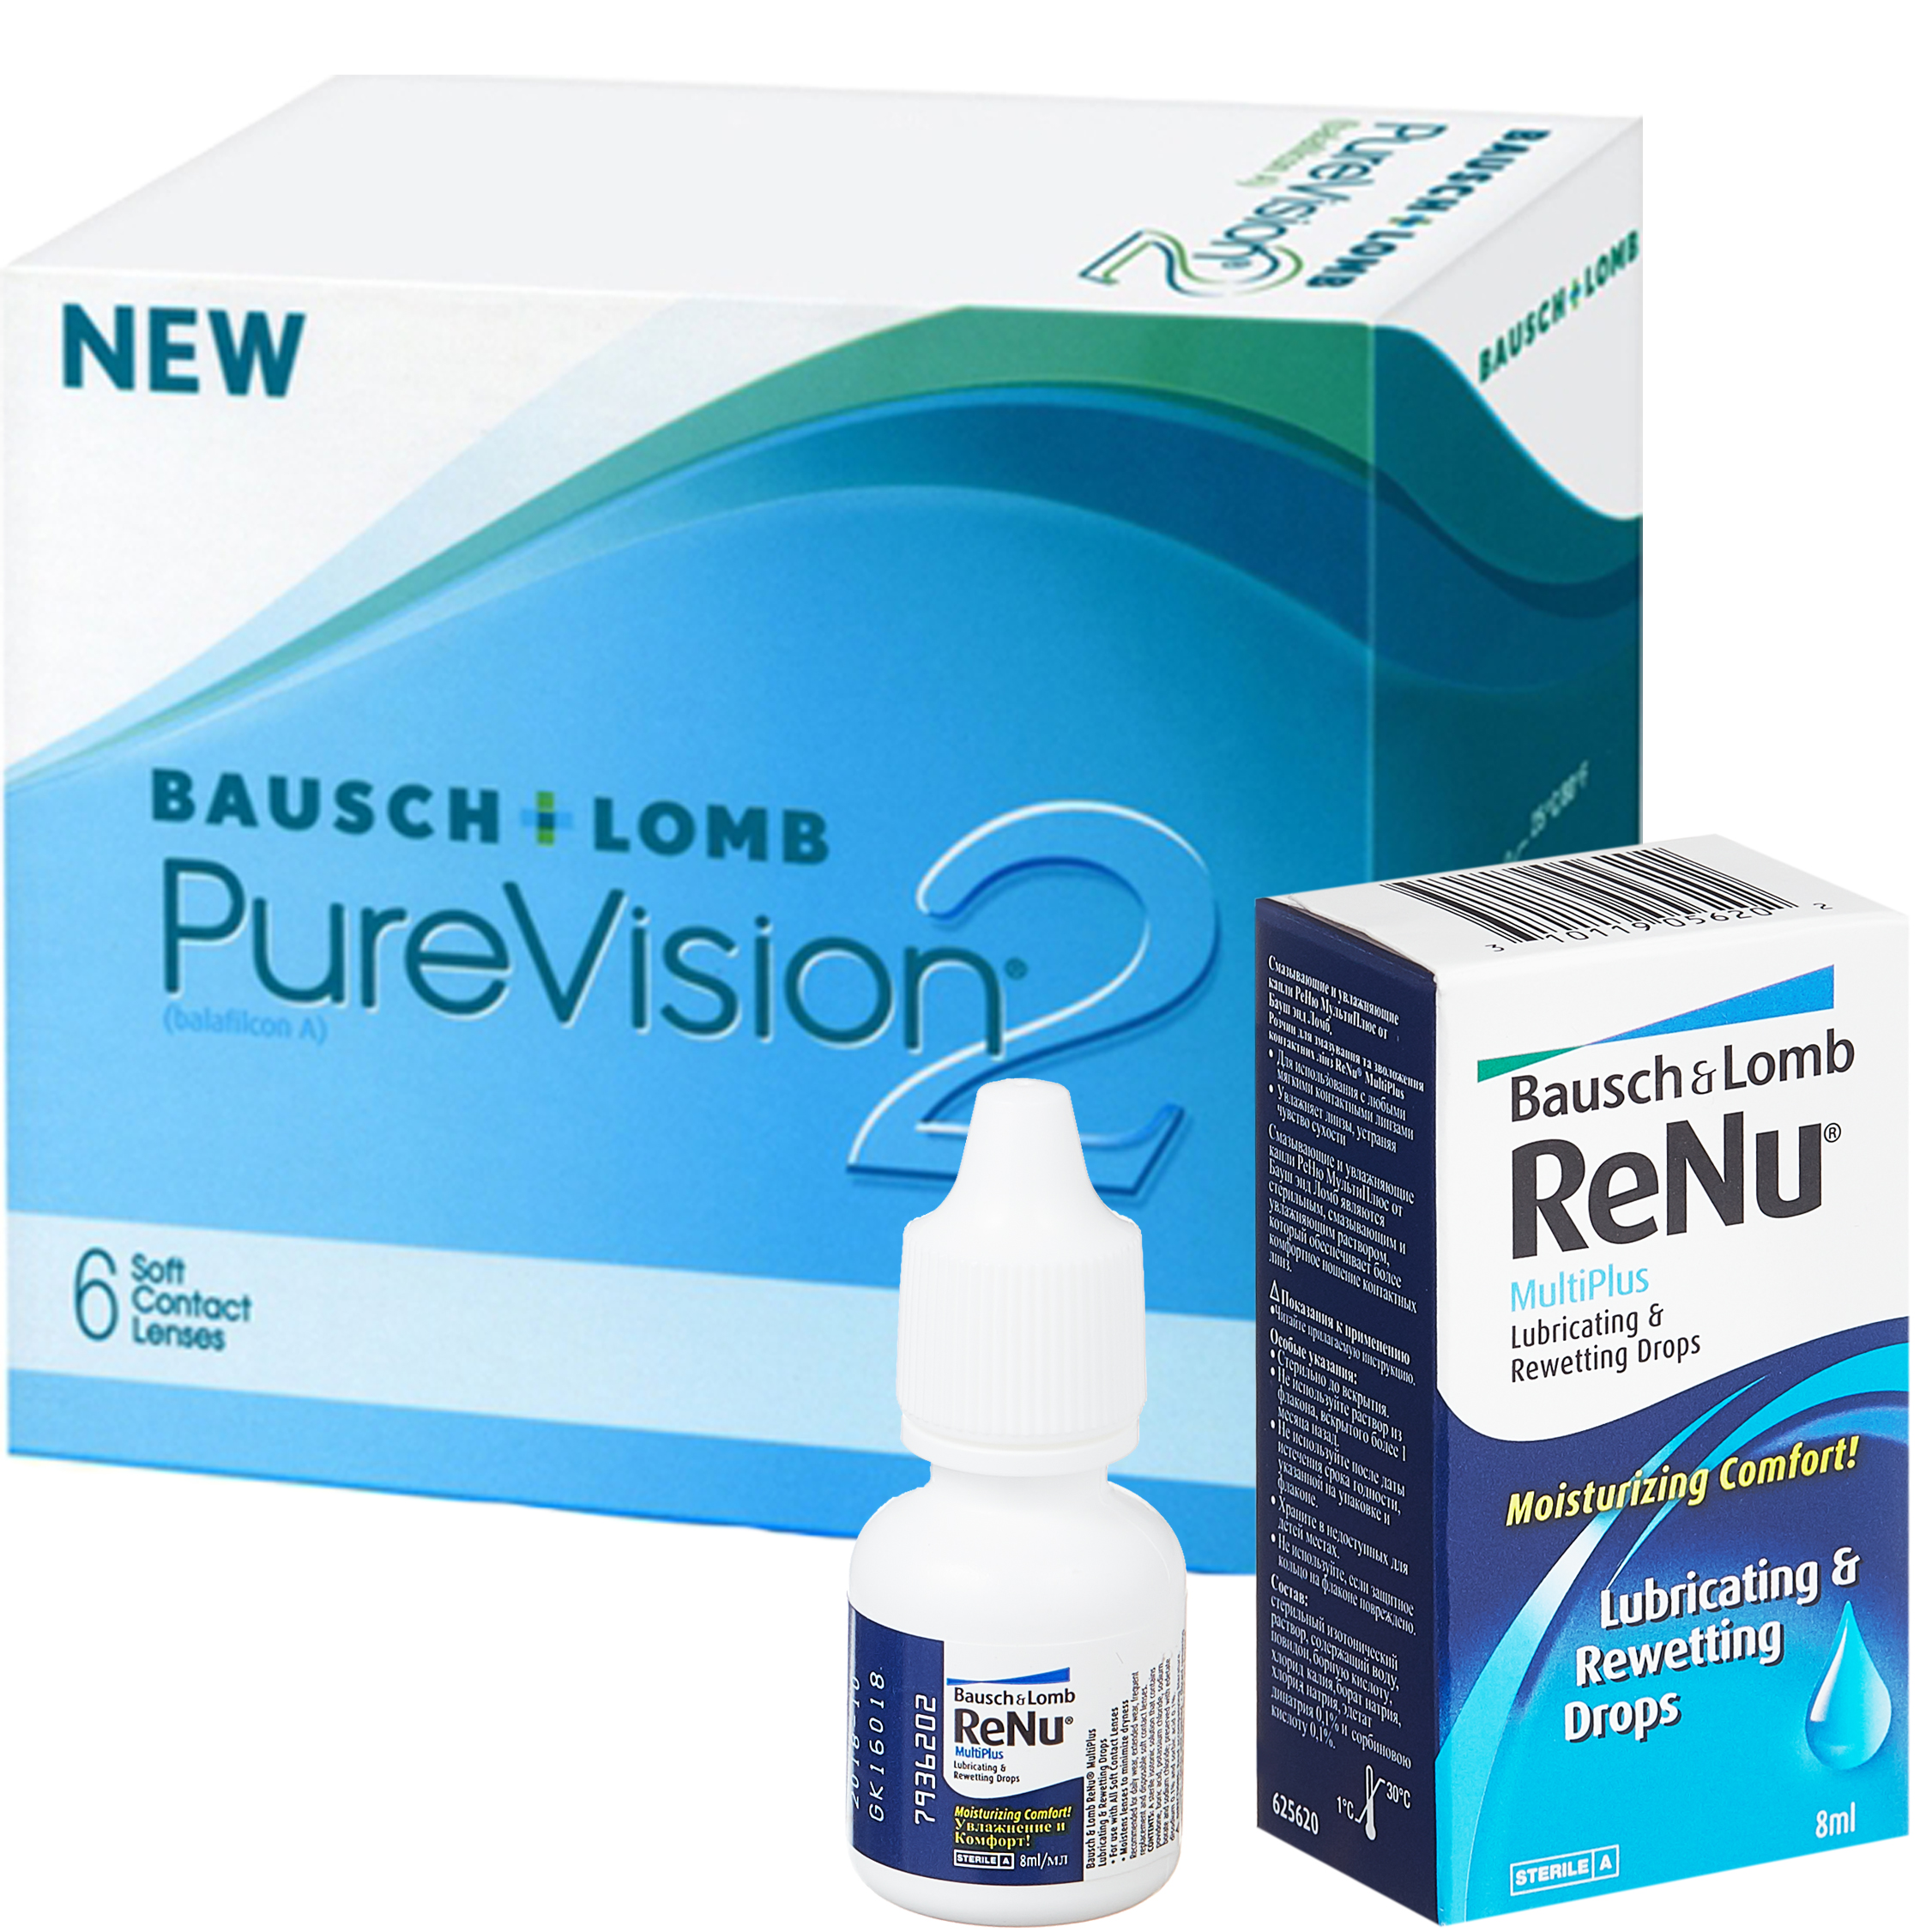 Купить PureVision 2 6 линз + ReNu MultiPlus капли, Контактные линзы PureVision 2 6 линз R 8.6 -0, 75 + Капли Renu MultiРlus 8 мл